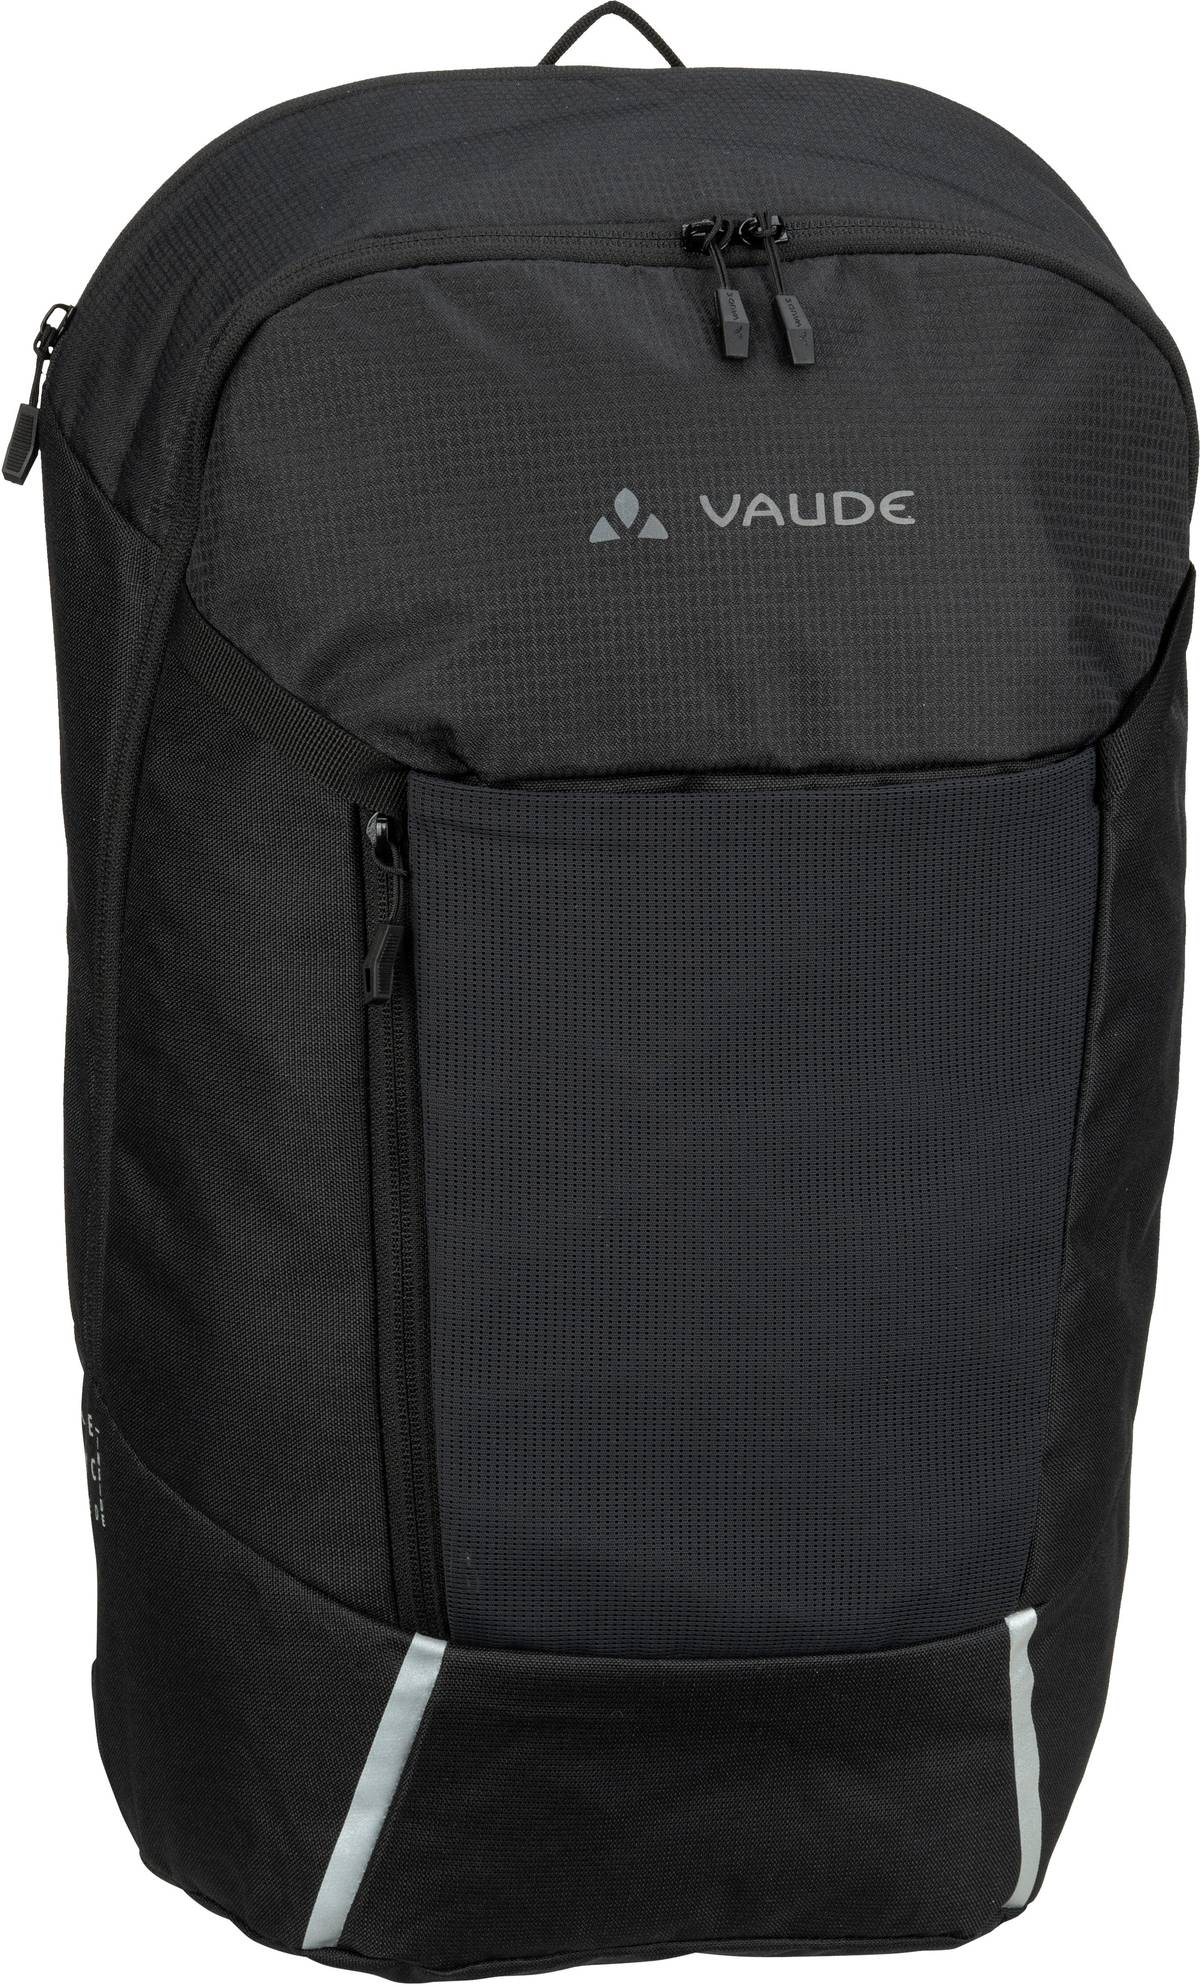 Vaude Vaude Cycle 22 Pack in Schwarz (22 Liter), Rucksack / Backpack